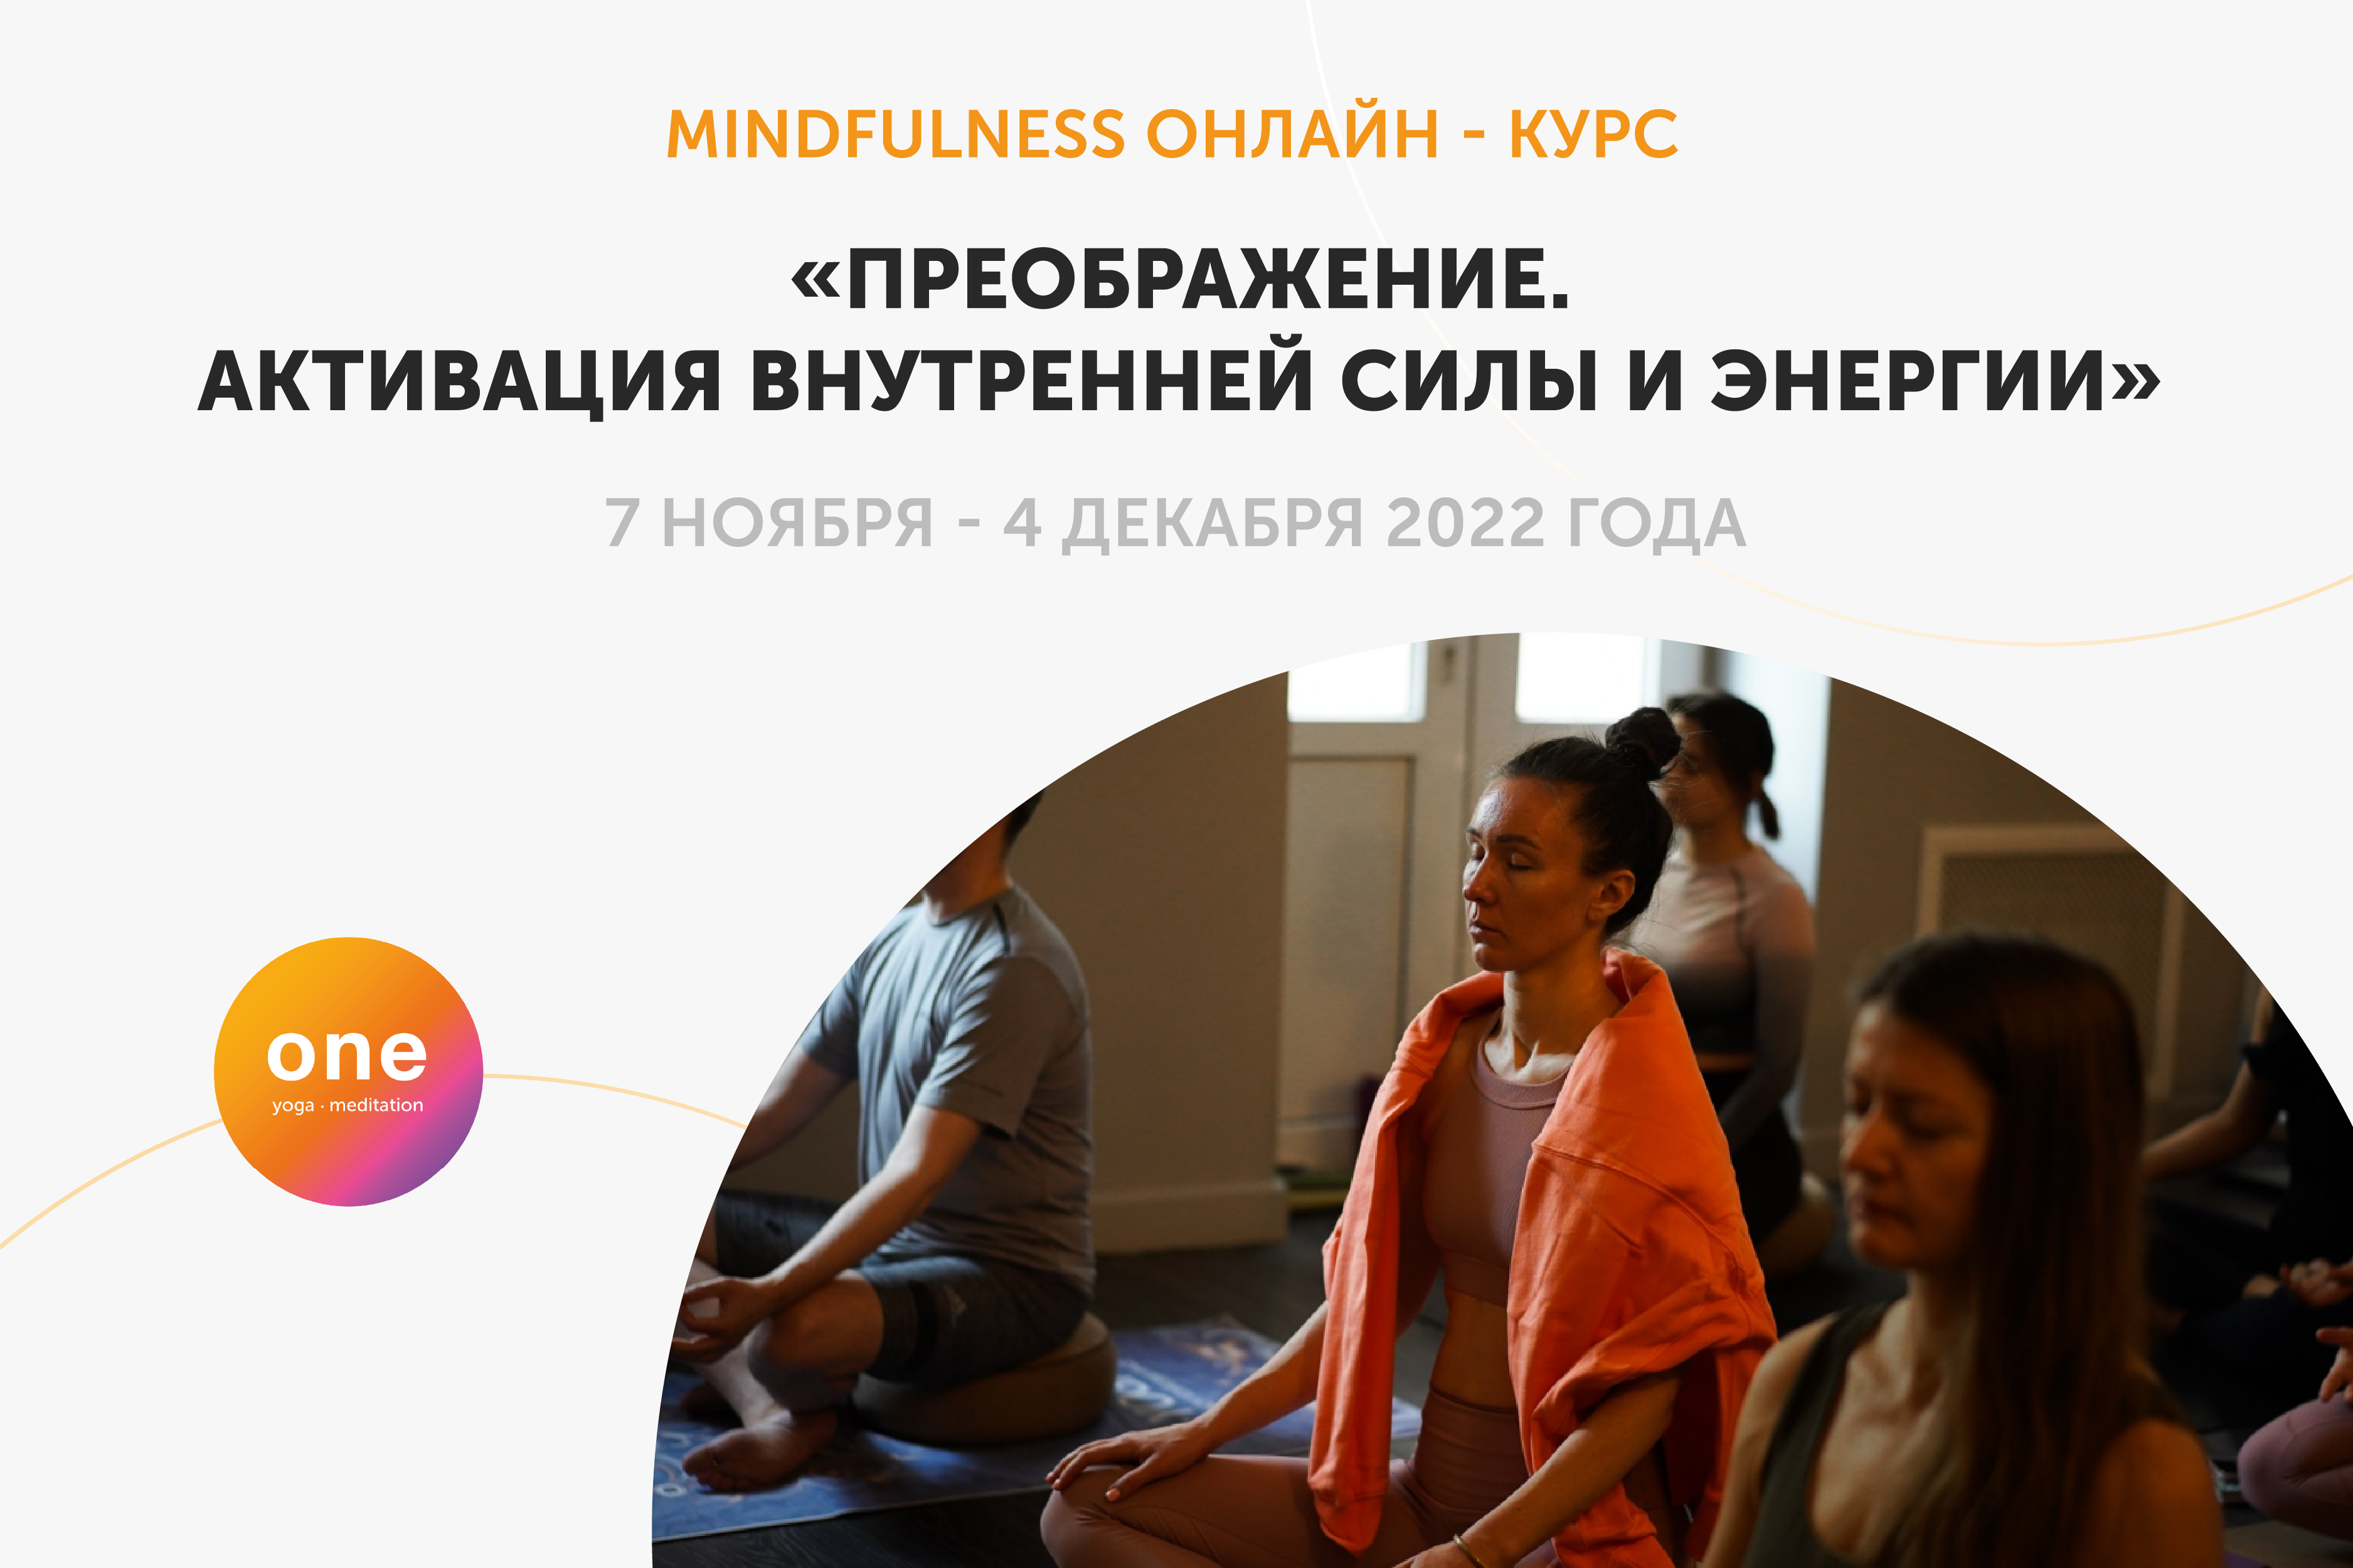 Mindfulness курс «Преображение. Активация внутренней силы и энергии»